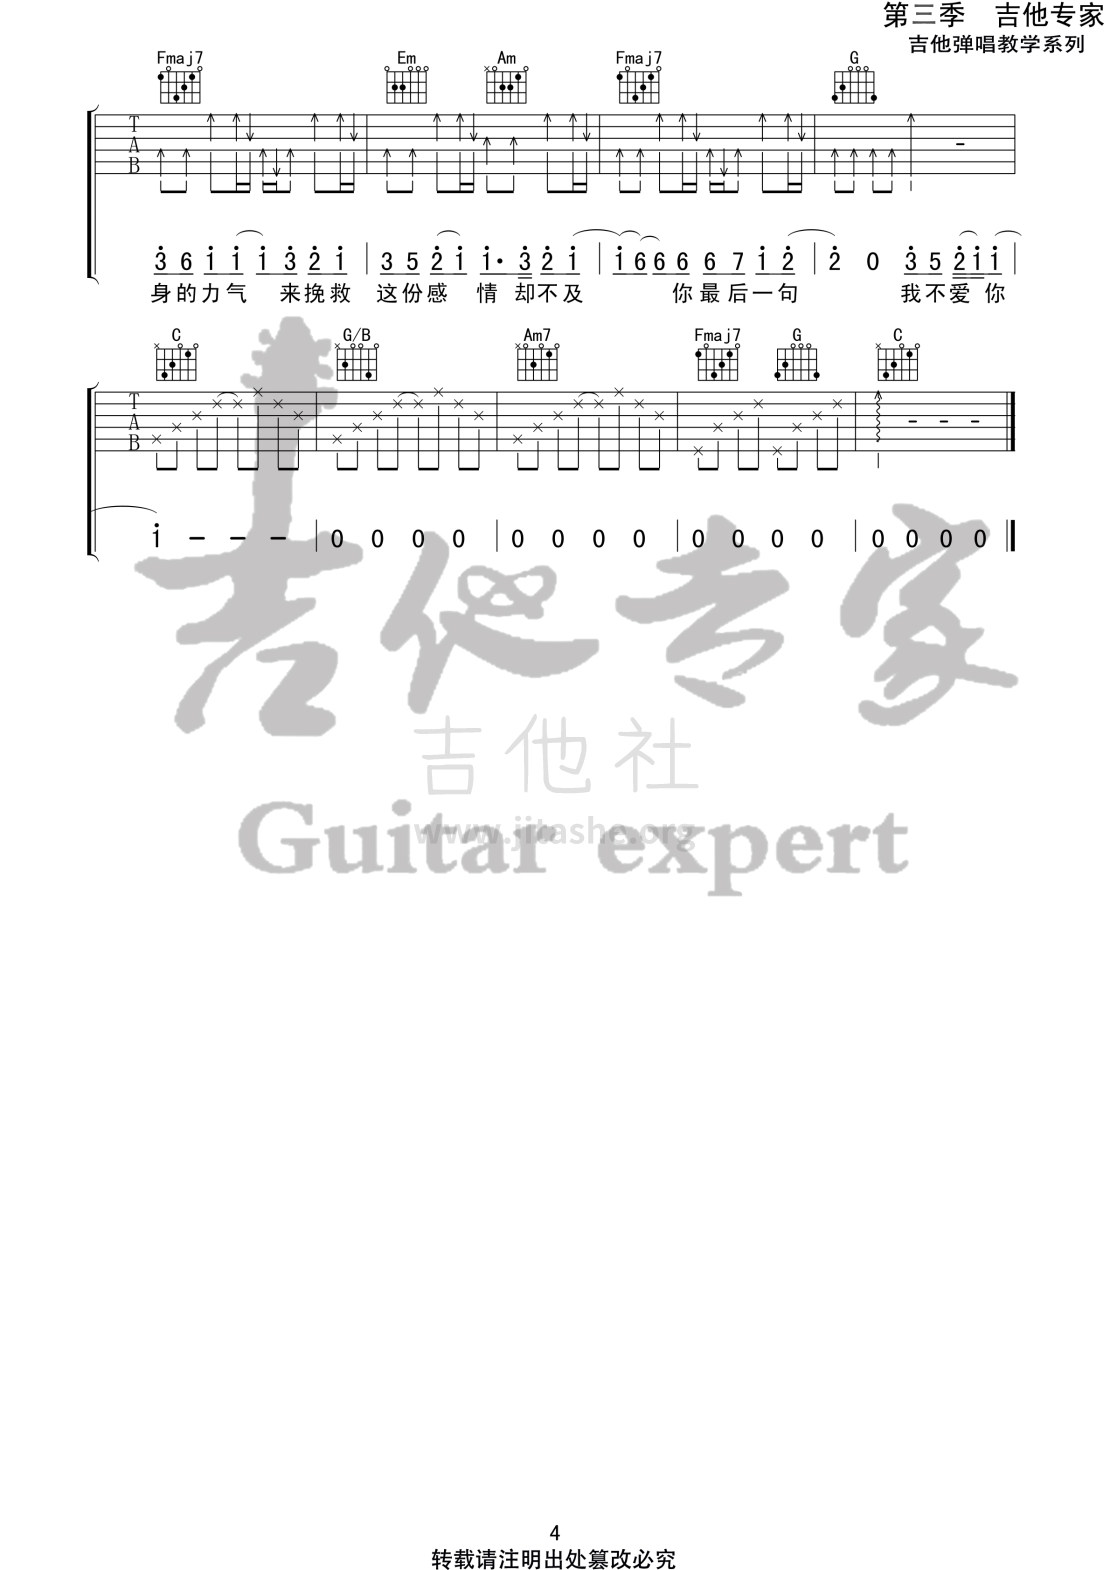 打印:最 (音艺吉他专家弹唱教学:第三季第16集)吉他谱_刘大壮_最4 第三季第十六集.jpg